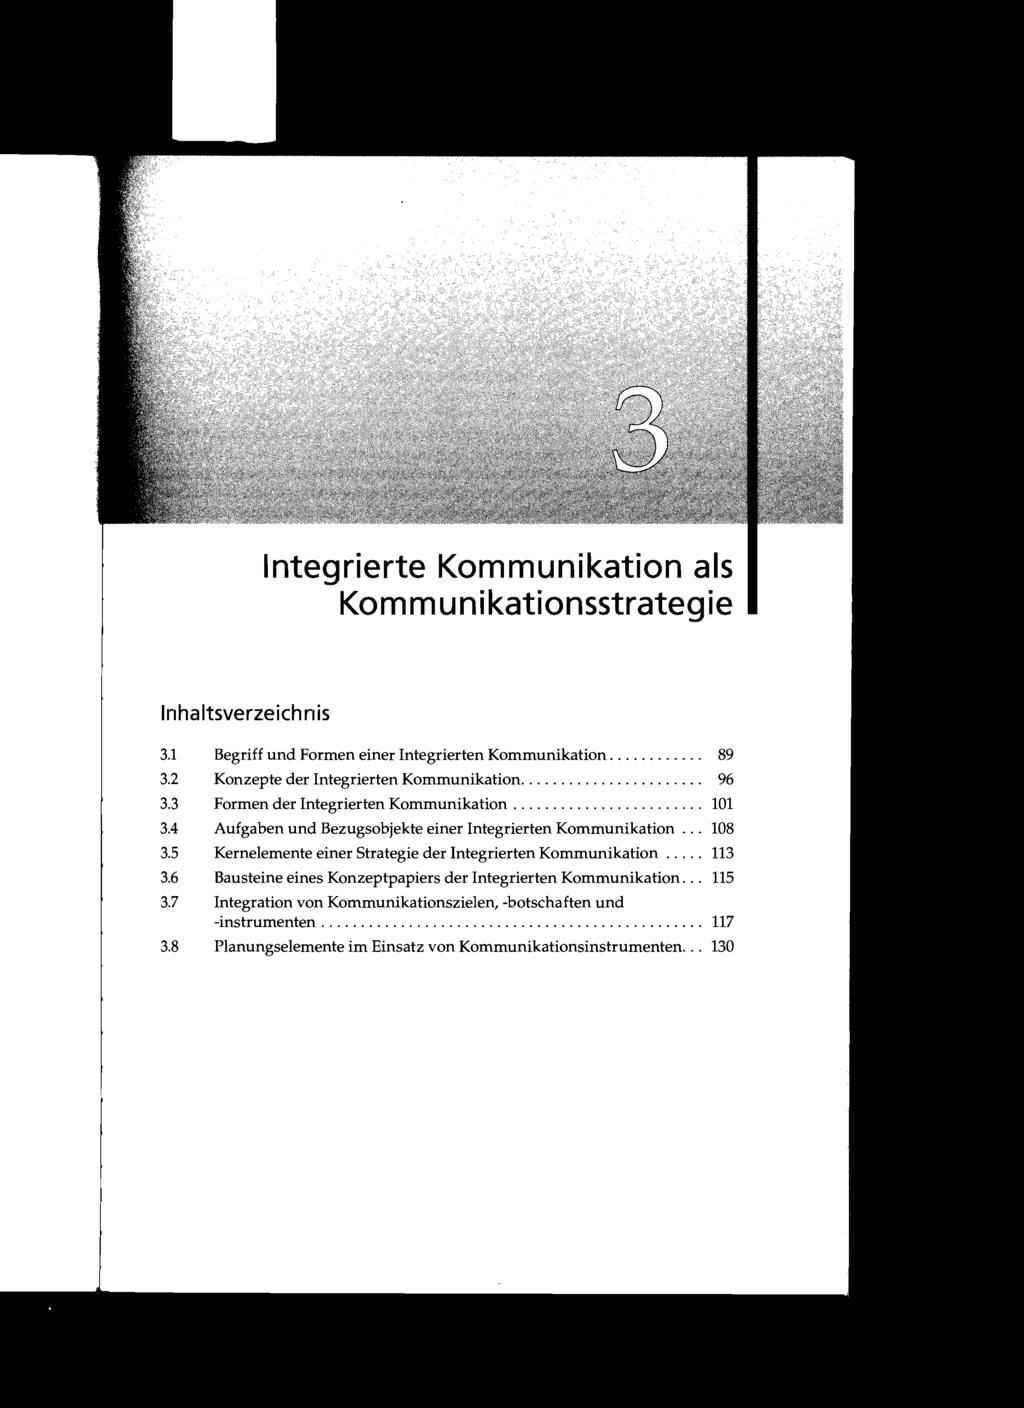 Integrierte Kommunikation als Kommunikationsstrategie 3.1 Begriff und Formen einer Integrierten Kommunikation............ 89 3.2 Konzepte der Integrierten Kommunikation....................... 96 3.